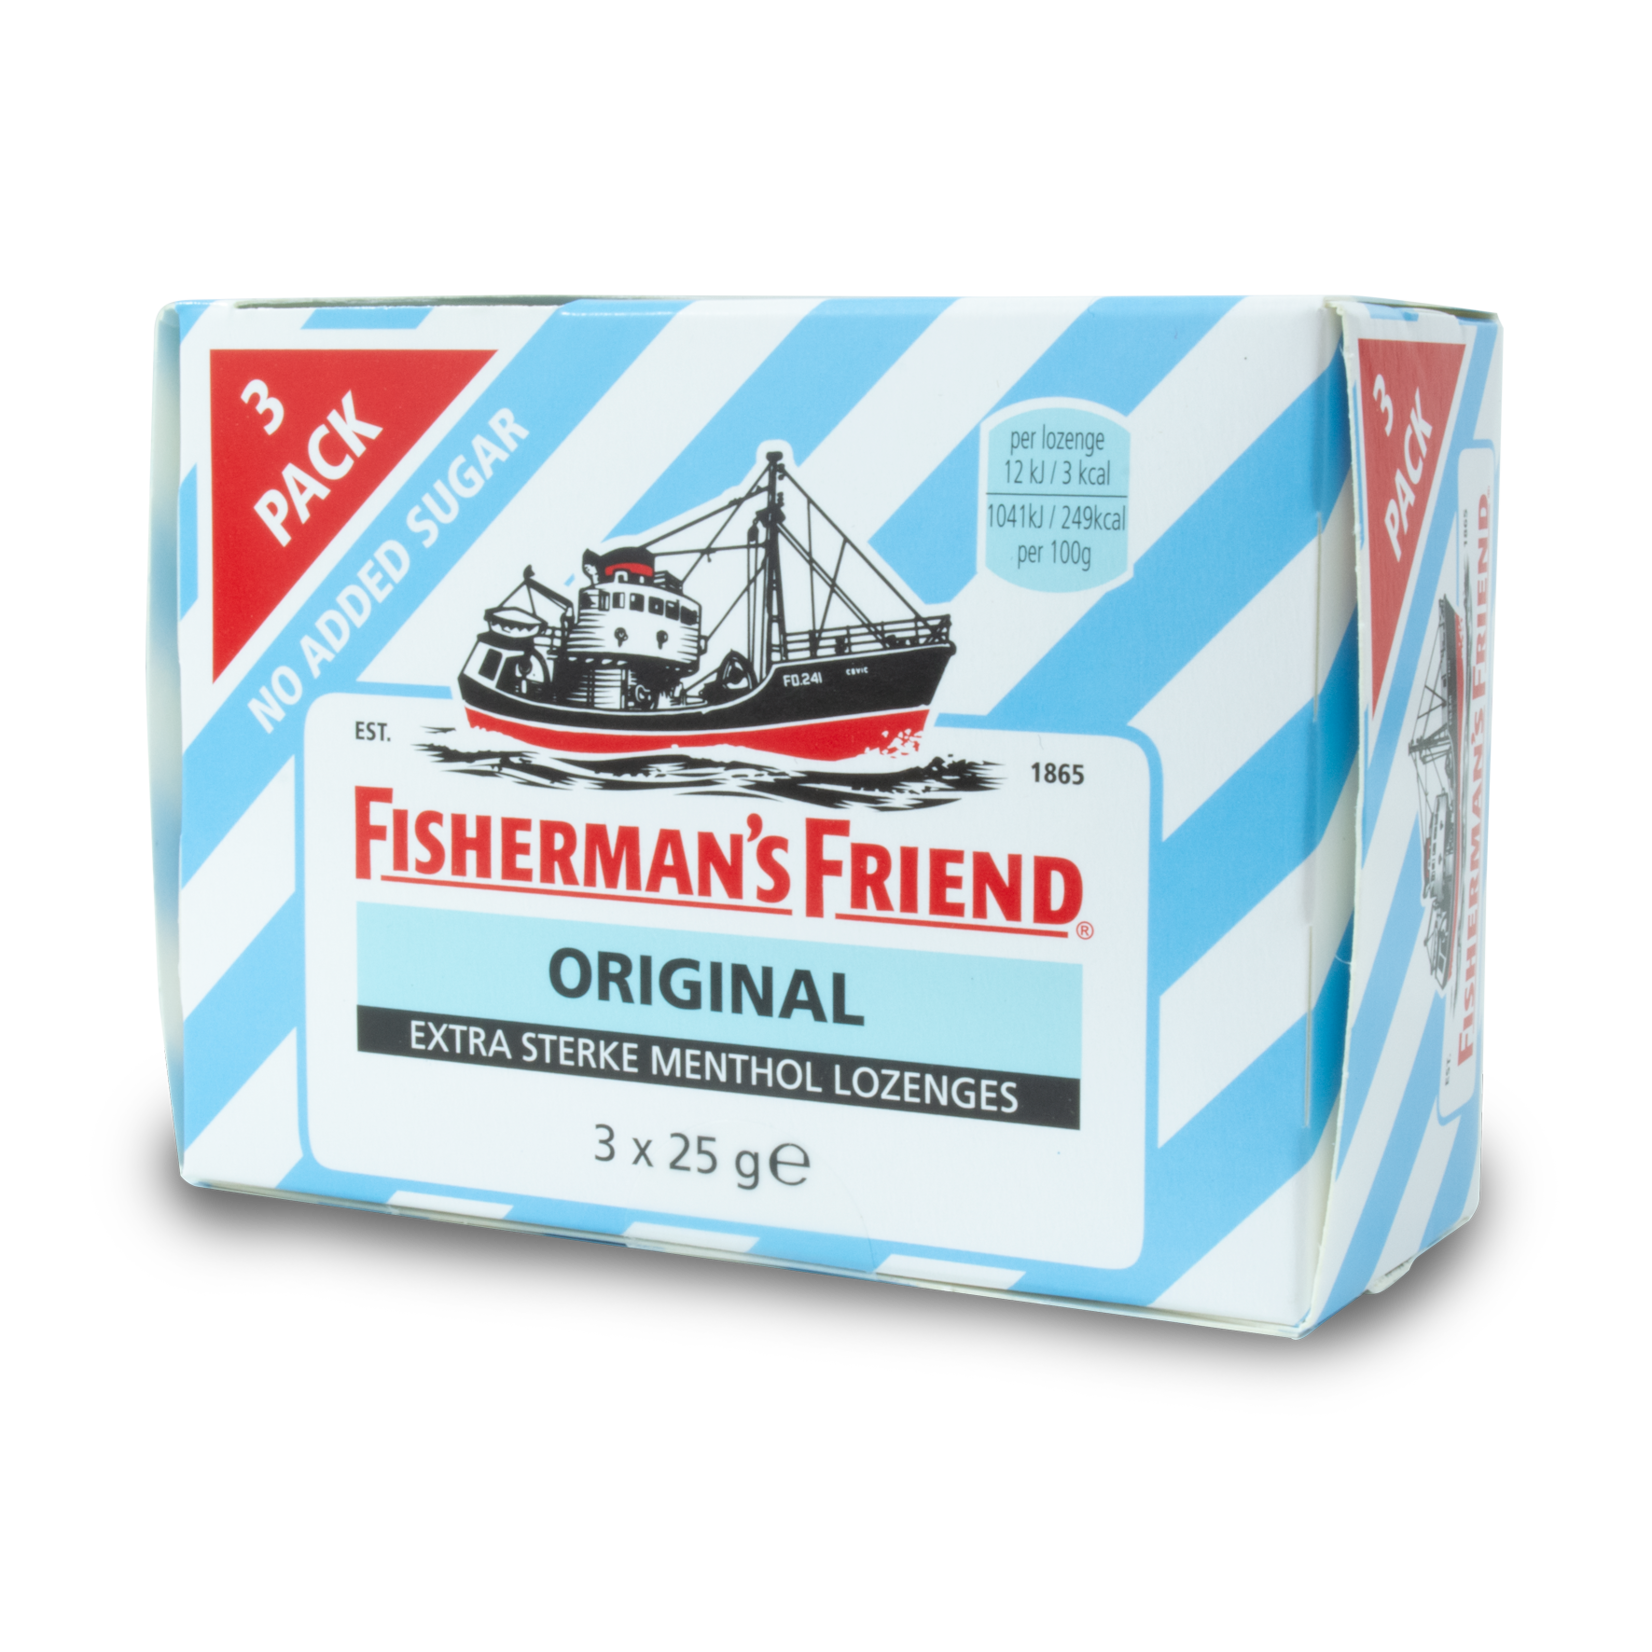 Fisherman's Friend Fisherman's Friend Original Sugar Free 3pk 3x25g